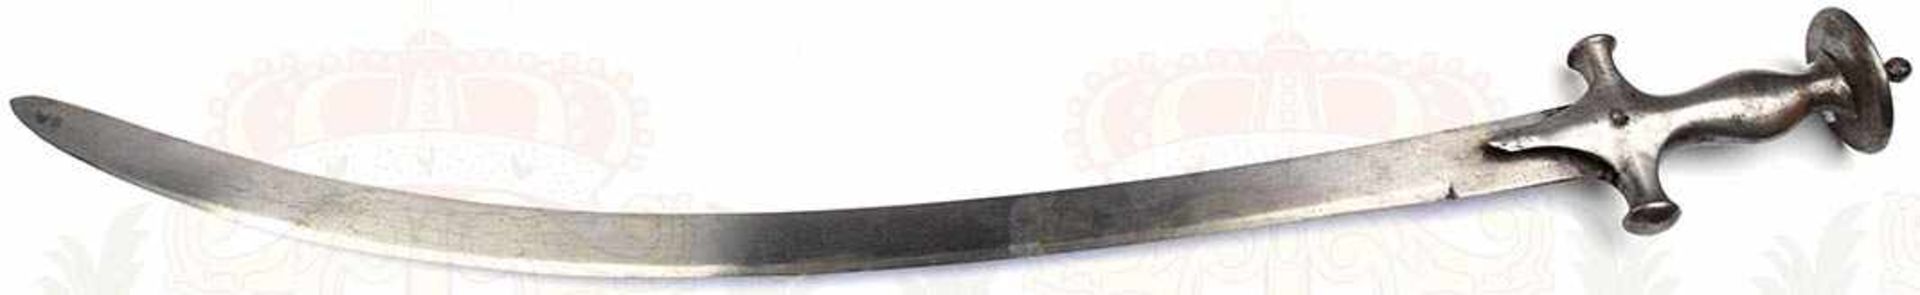 TULWAR, stark gekrümmte Keilklinge, etwas narbig u. fleckig, geputzt, L. 72 cm, schlichtes Eisen-